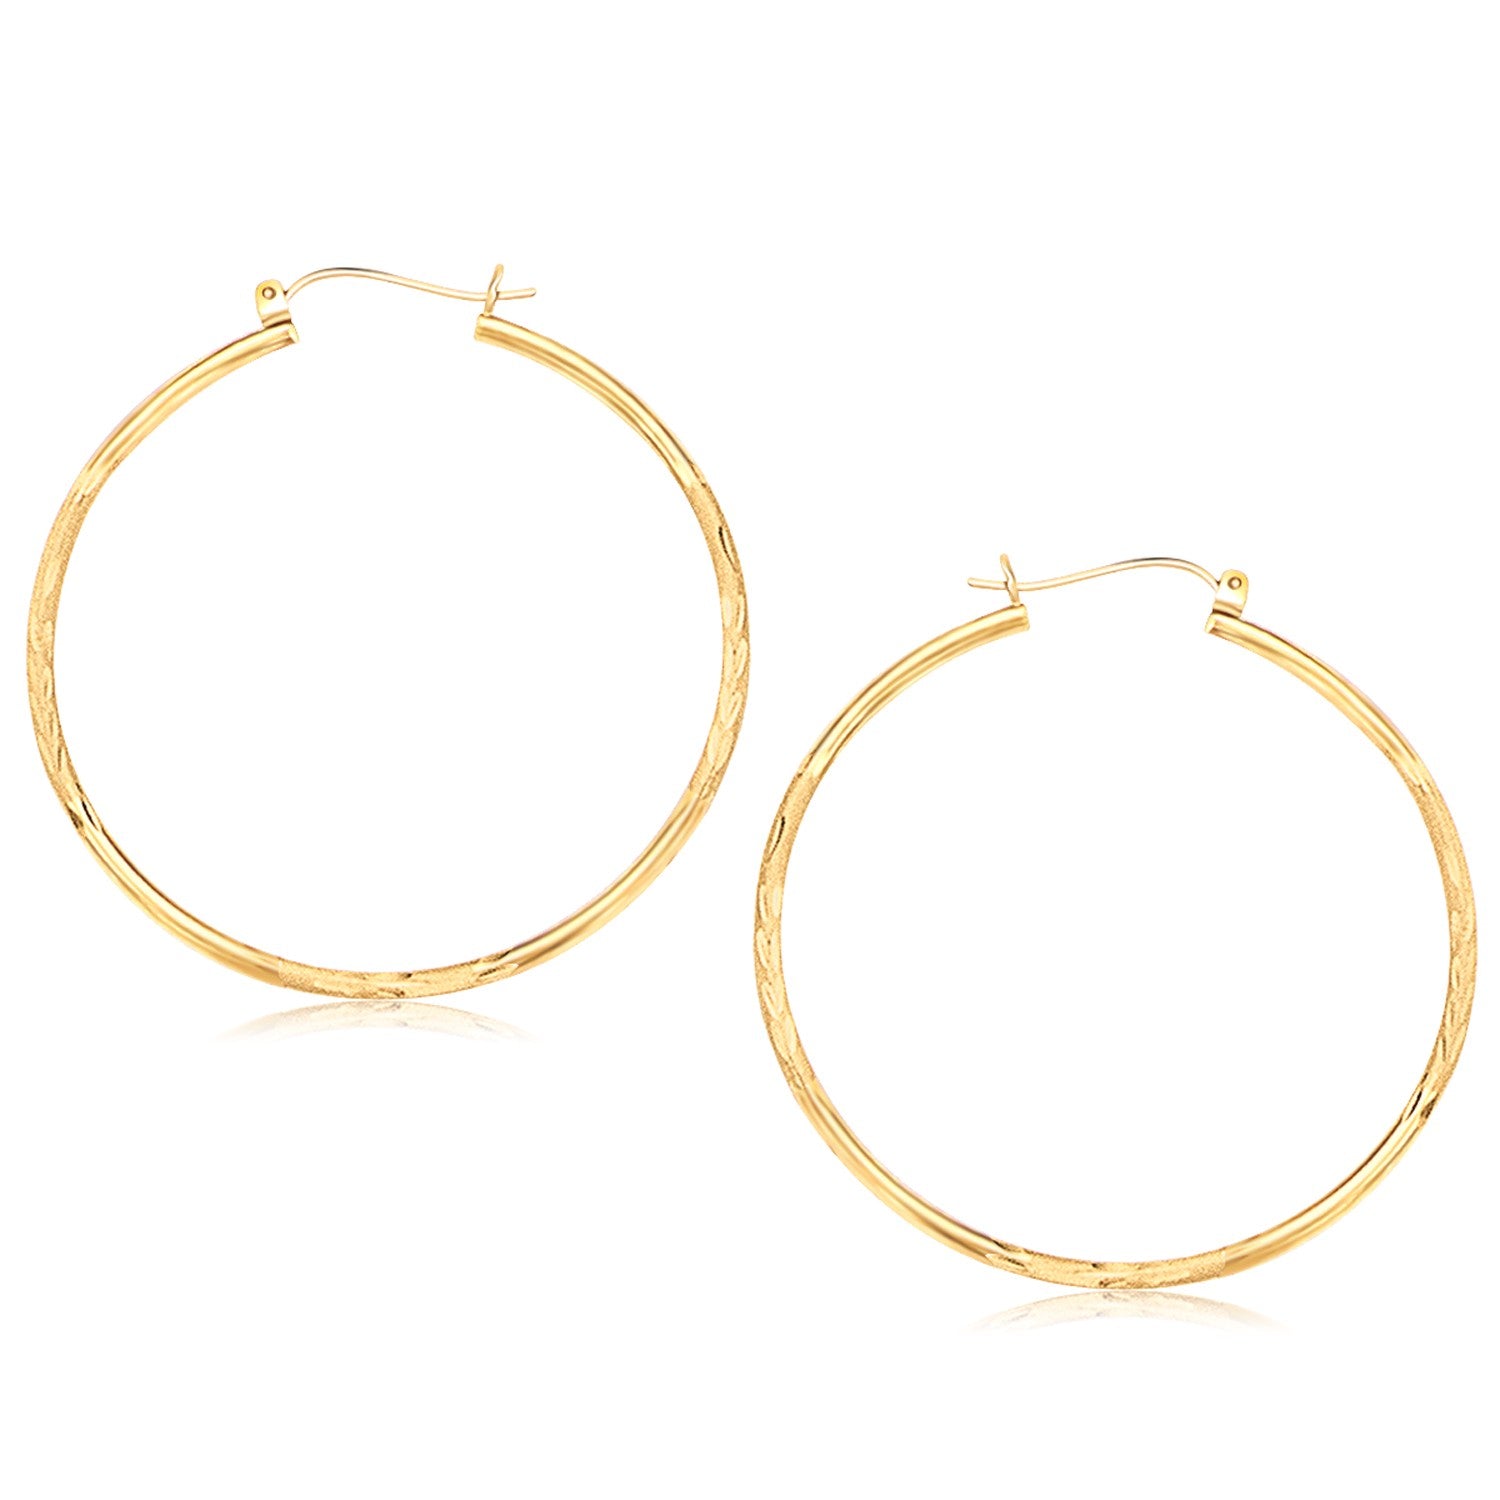 14K Yellow Gold Fancy Diamond Cut Extra Large Hoop Earrings 45Mm Diameter 36556-1